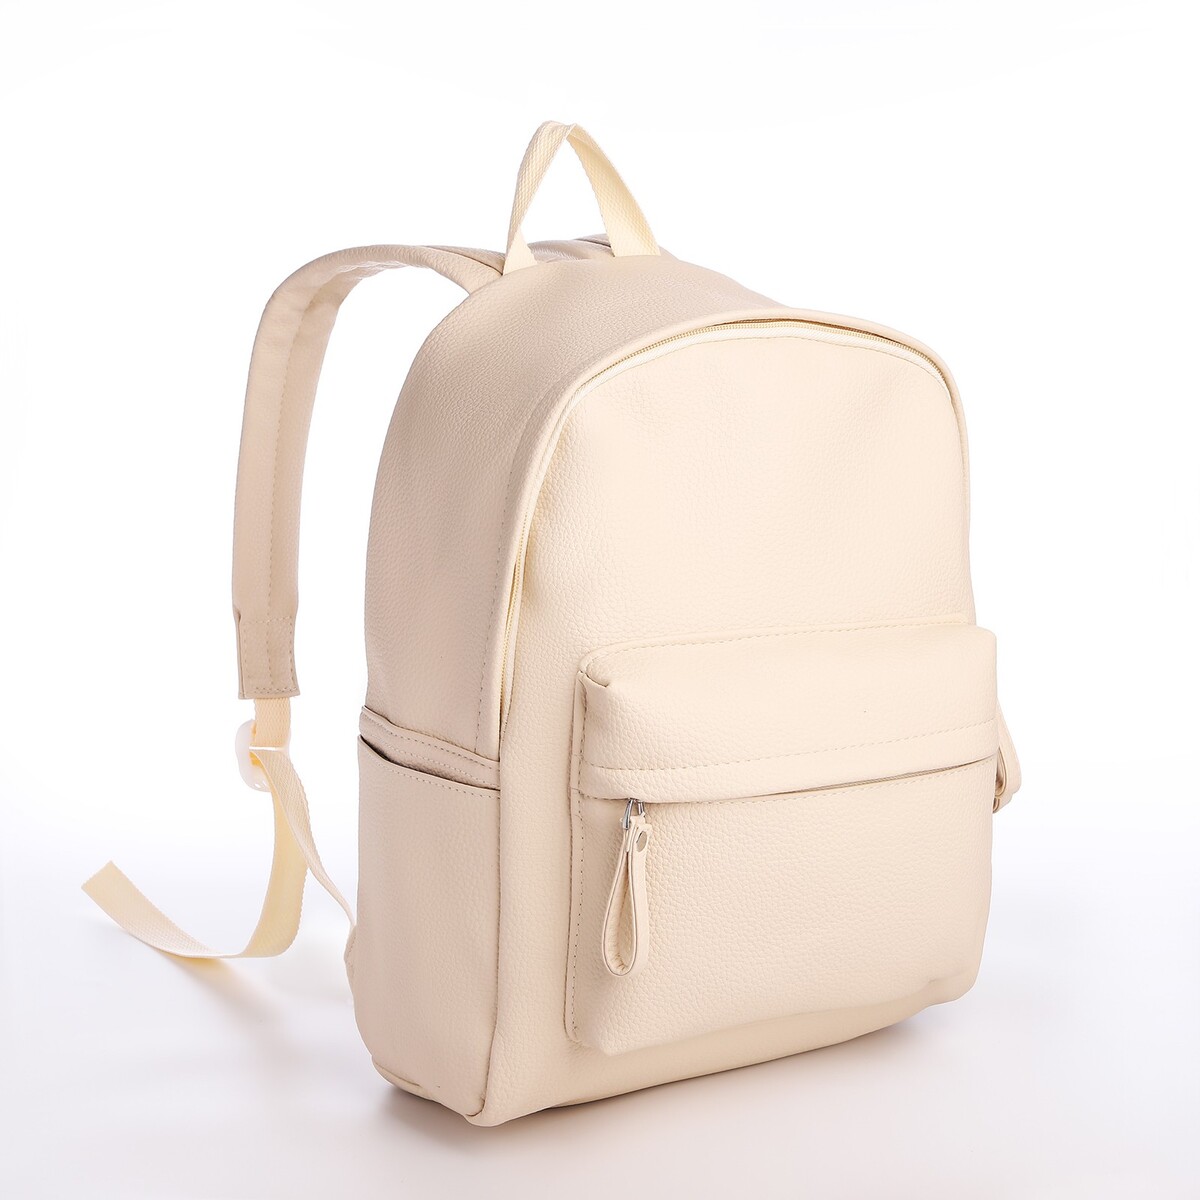 Рюкзак молодежный из искусственной кожи на молнии, 4 кармана, цвет бежевый рюкзак школьный из текстиля на молнии 4 кармана кошелек бежевый